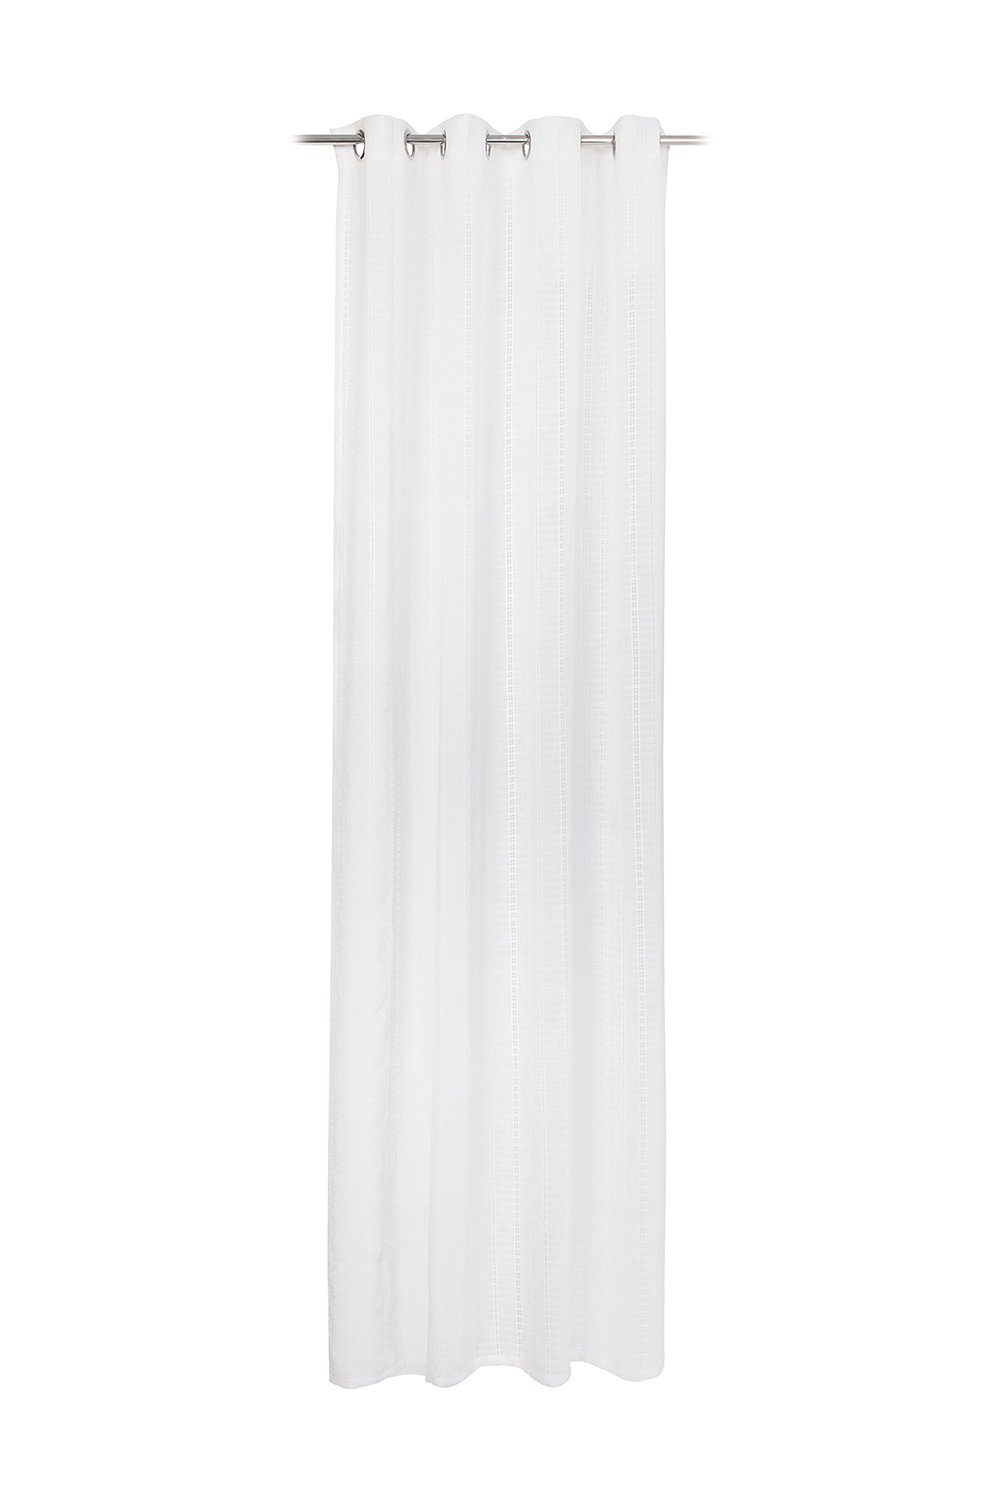 Vorhang Ösenschal, Polyester, Weiß, 140 x 245 cm, Gözze, Ösen,  halbtransparent, Polyester, Leinenoptik, mit Lochstickerei, mit einer Größe  von 140 x 245 cm